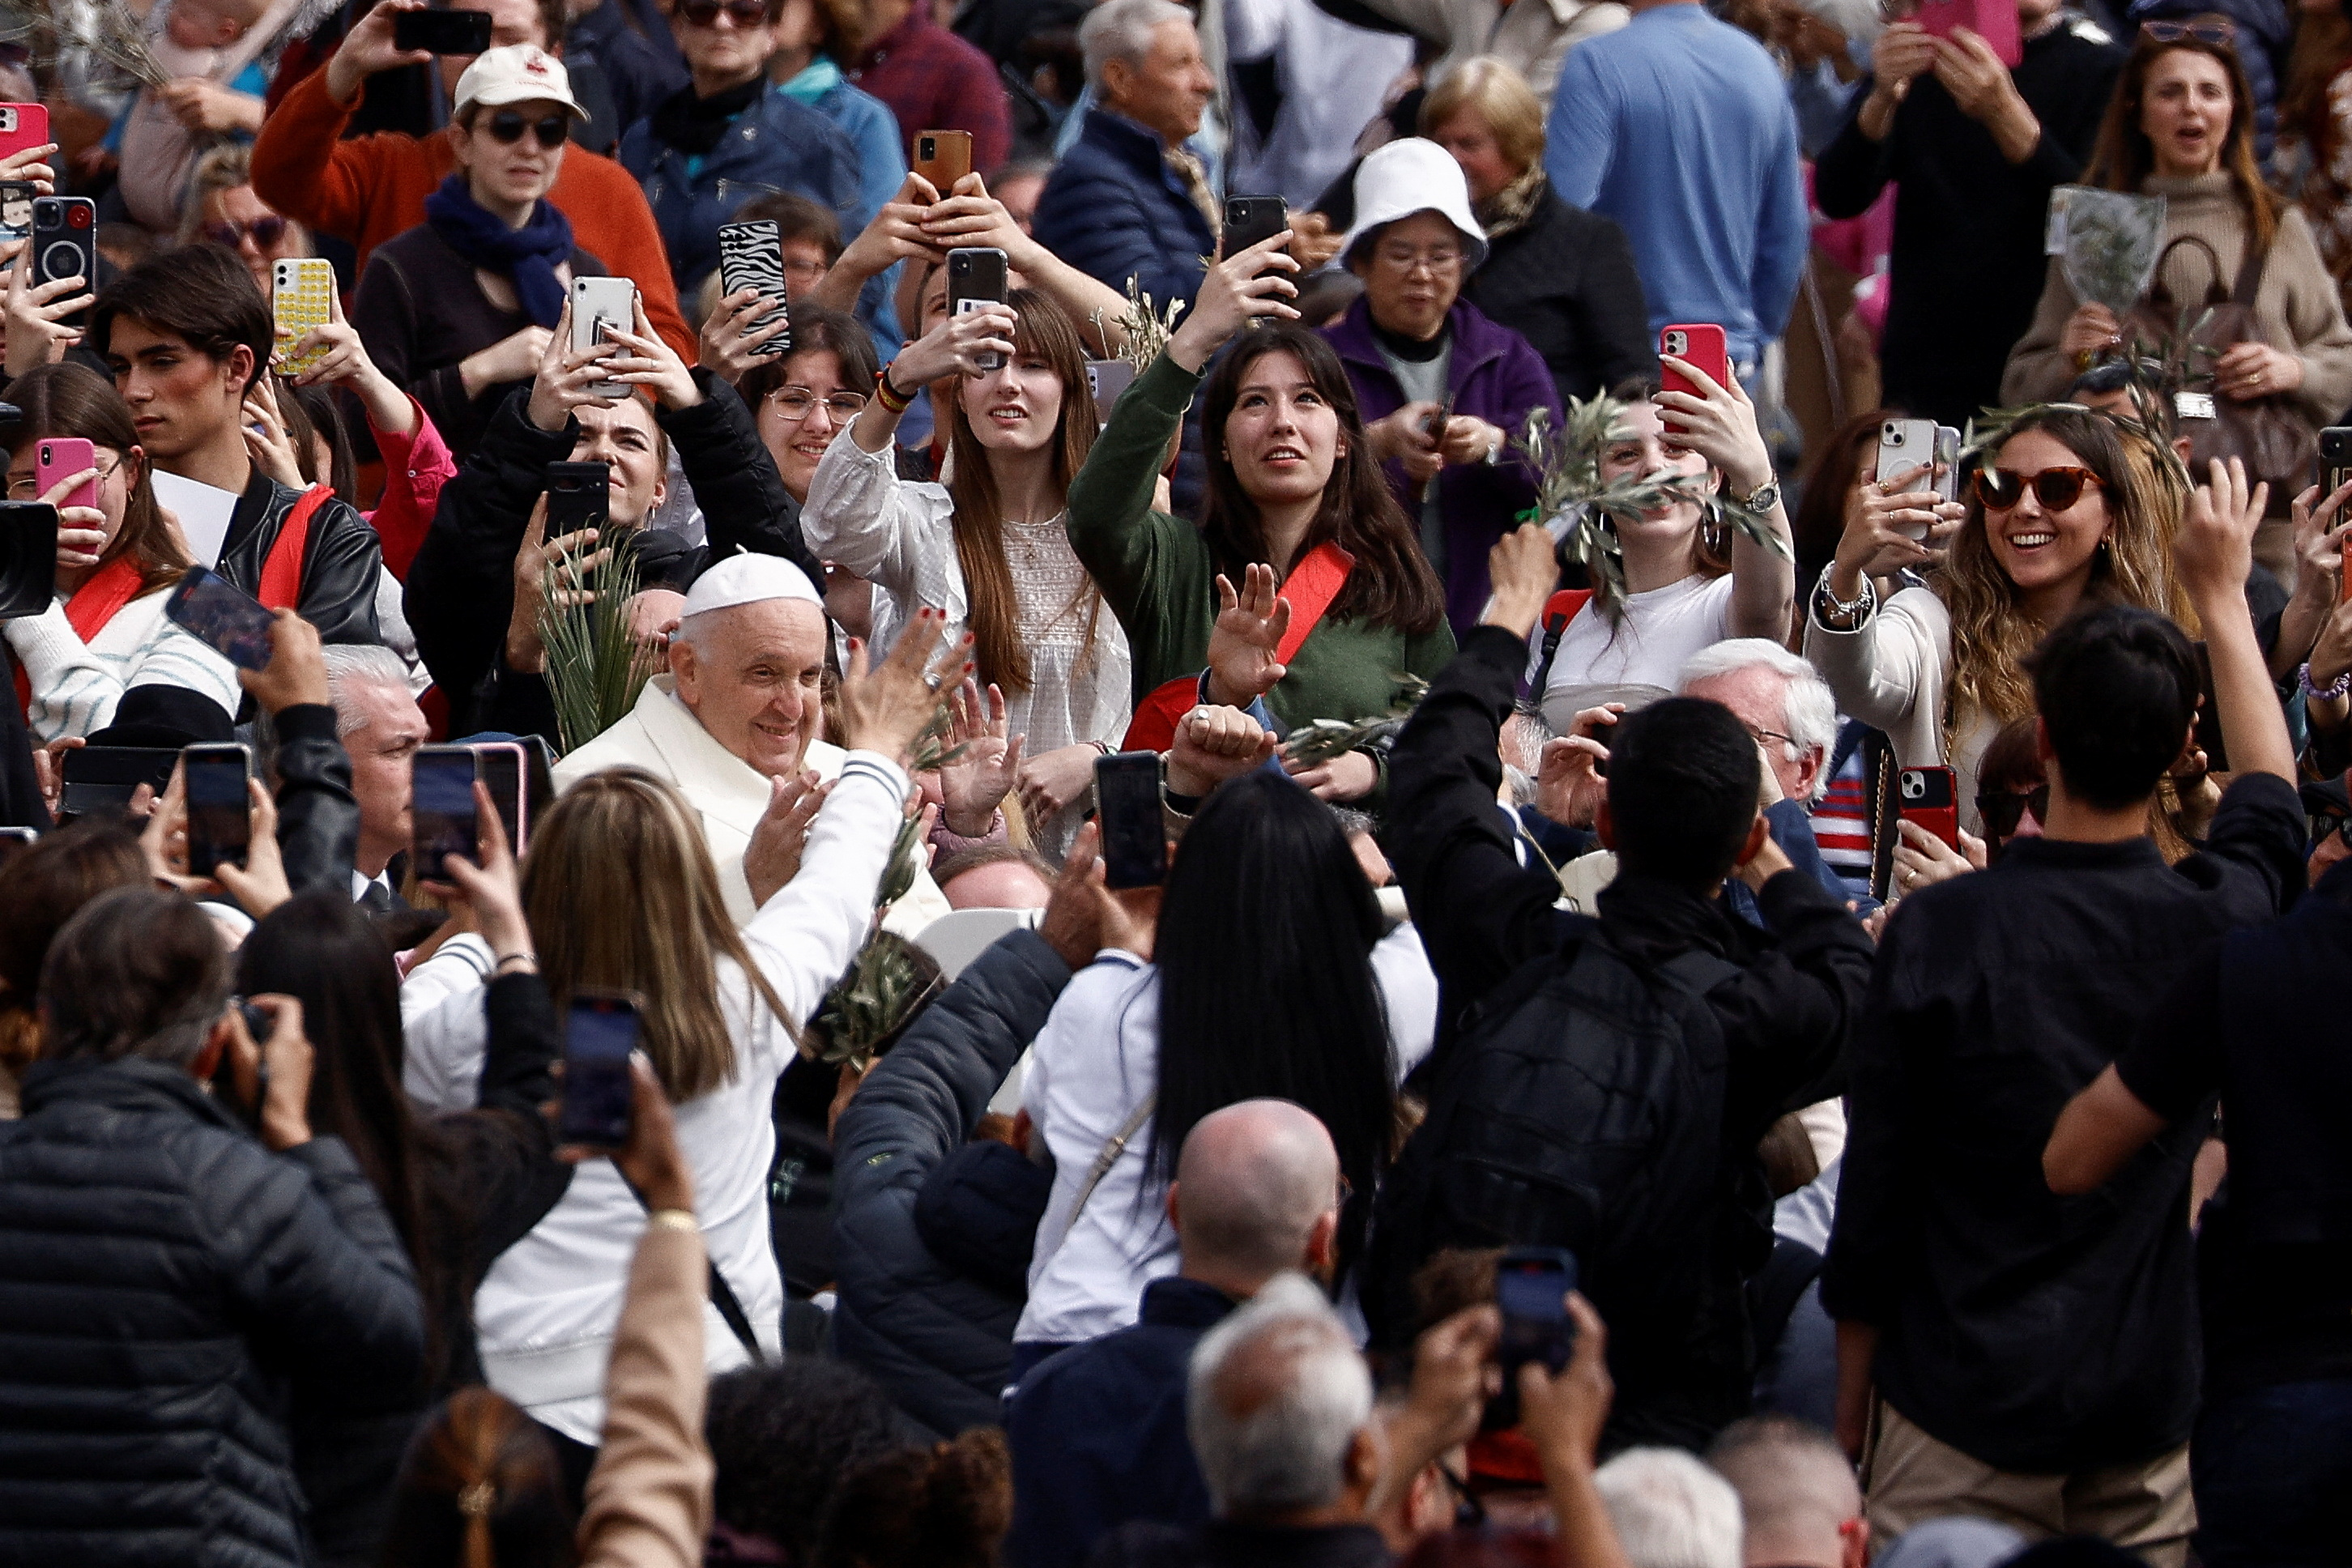 La multitud toma fotos del líder católico